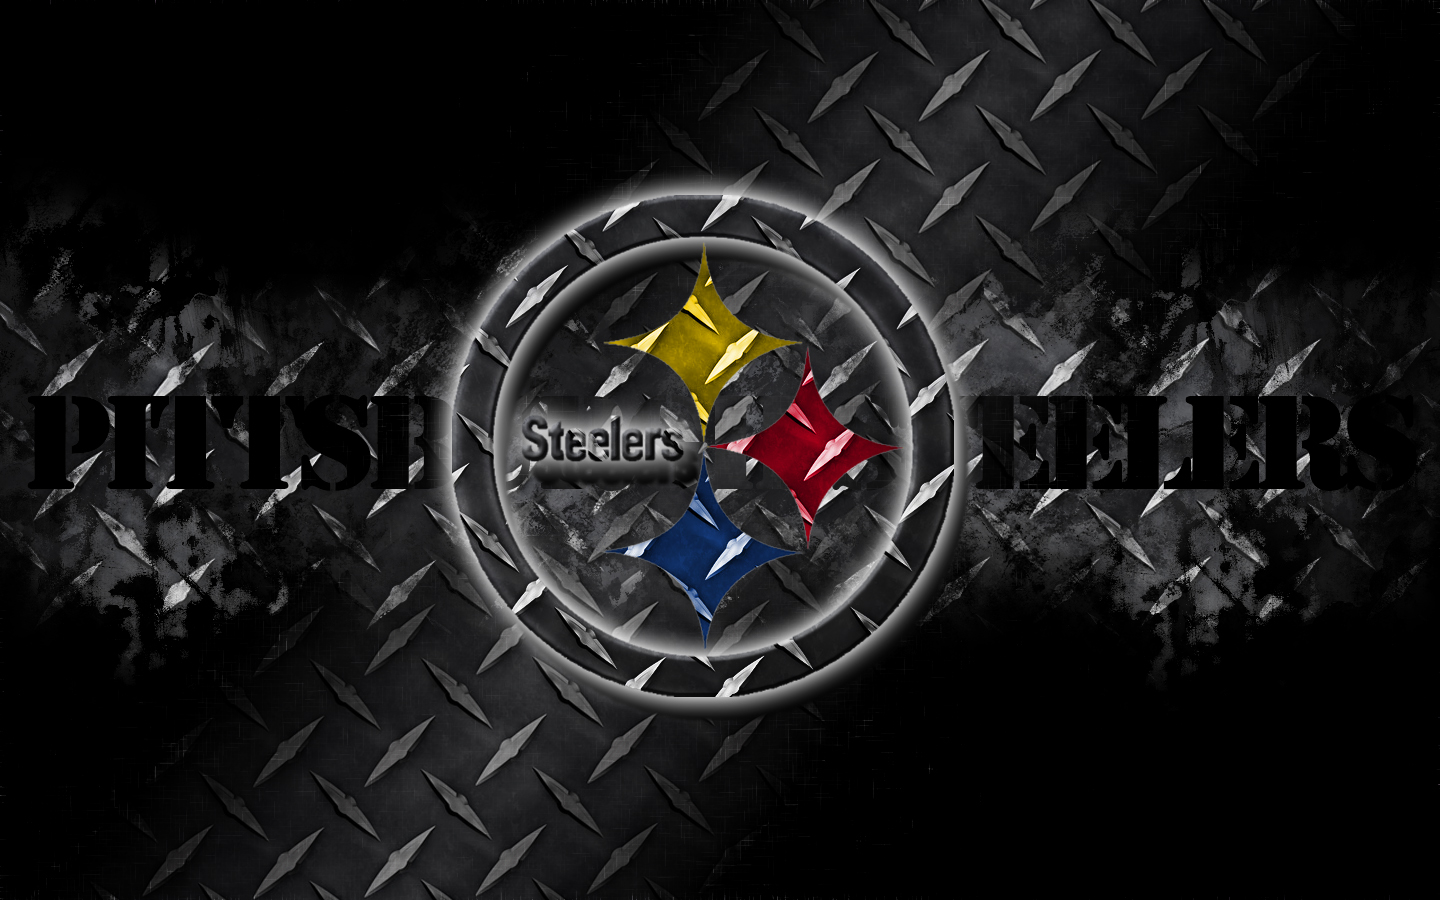  Pittsburgh Steelers wallpaper desktop background Pittsburgh Steelers